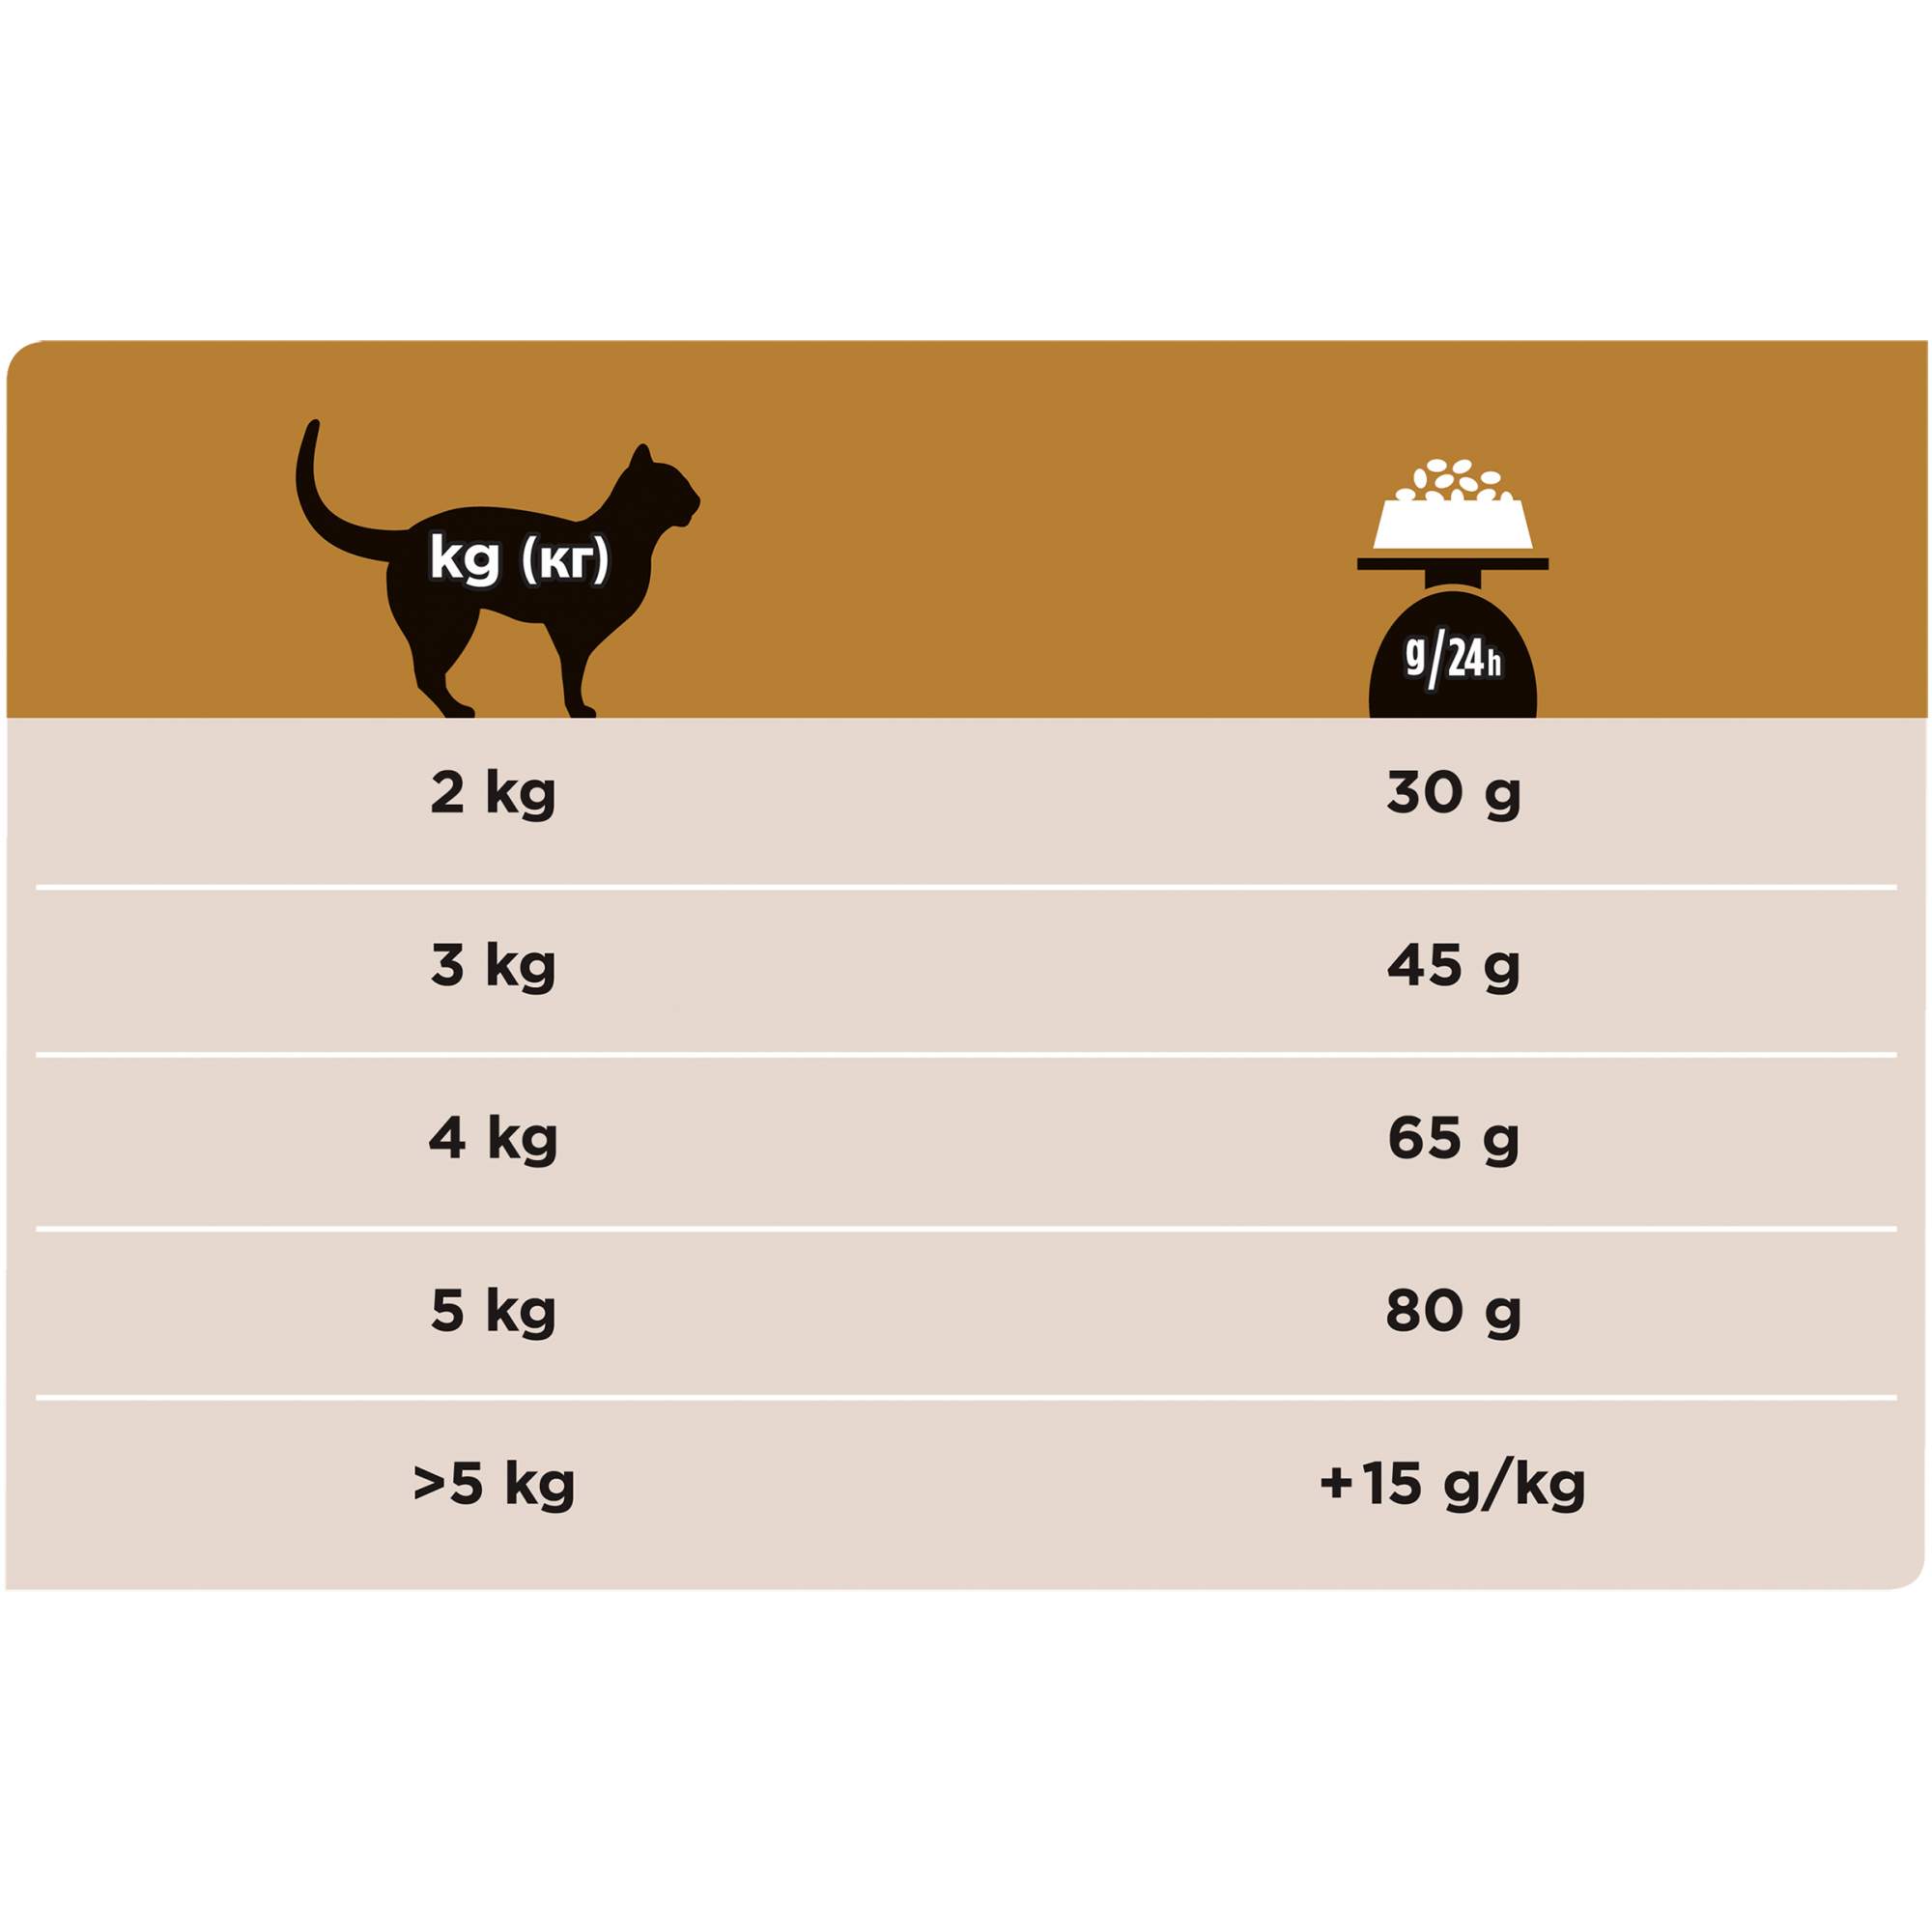 Сухой корм для кошек PRO PLAN VETERINARY DIETS для поддержания функции почек, 1,5 кг